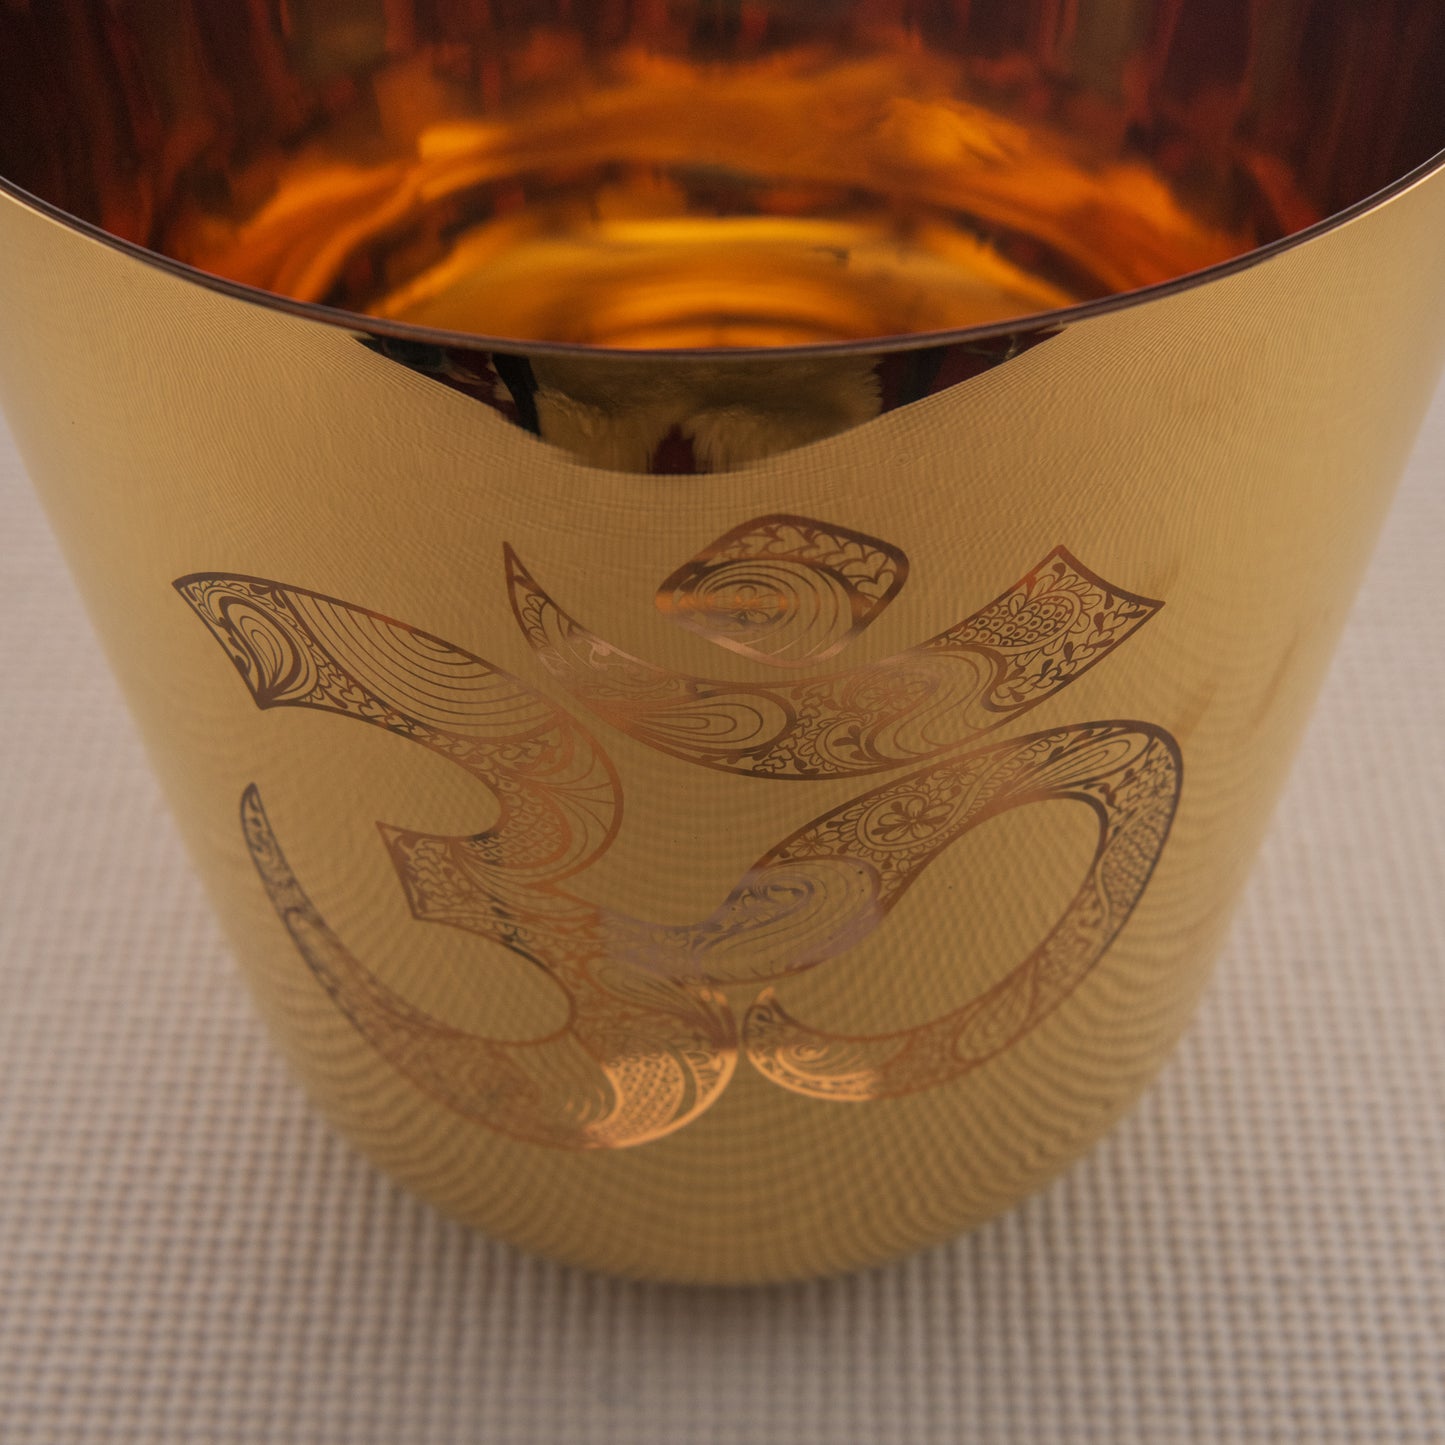 9" C-11 Gold Crystal Singing Bowl with Sacred Om Symbol, Sacred Singing Bowls